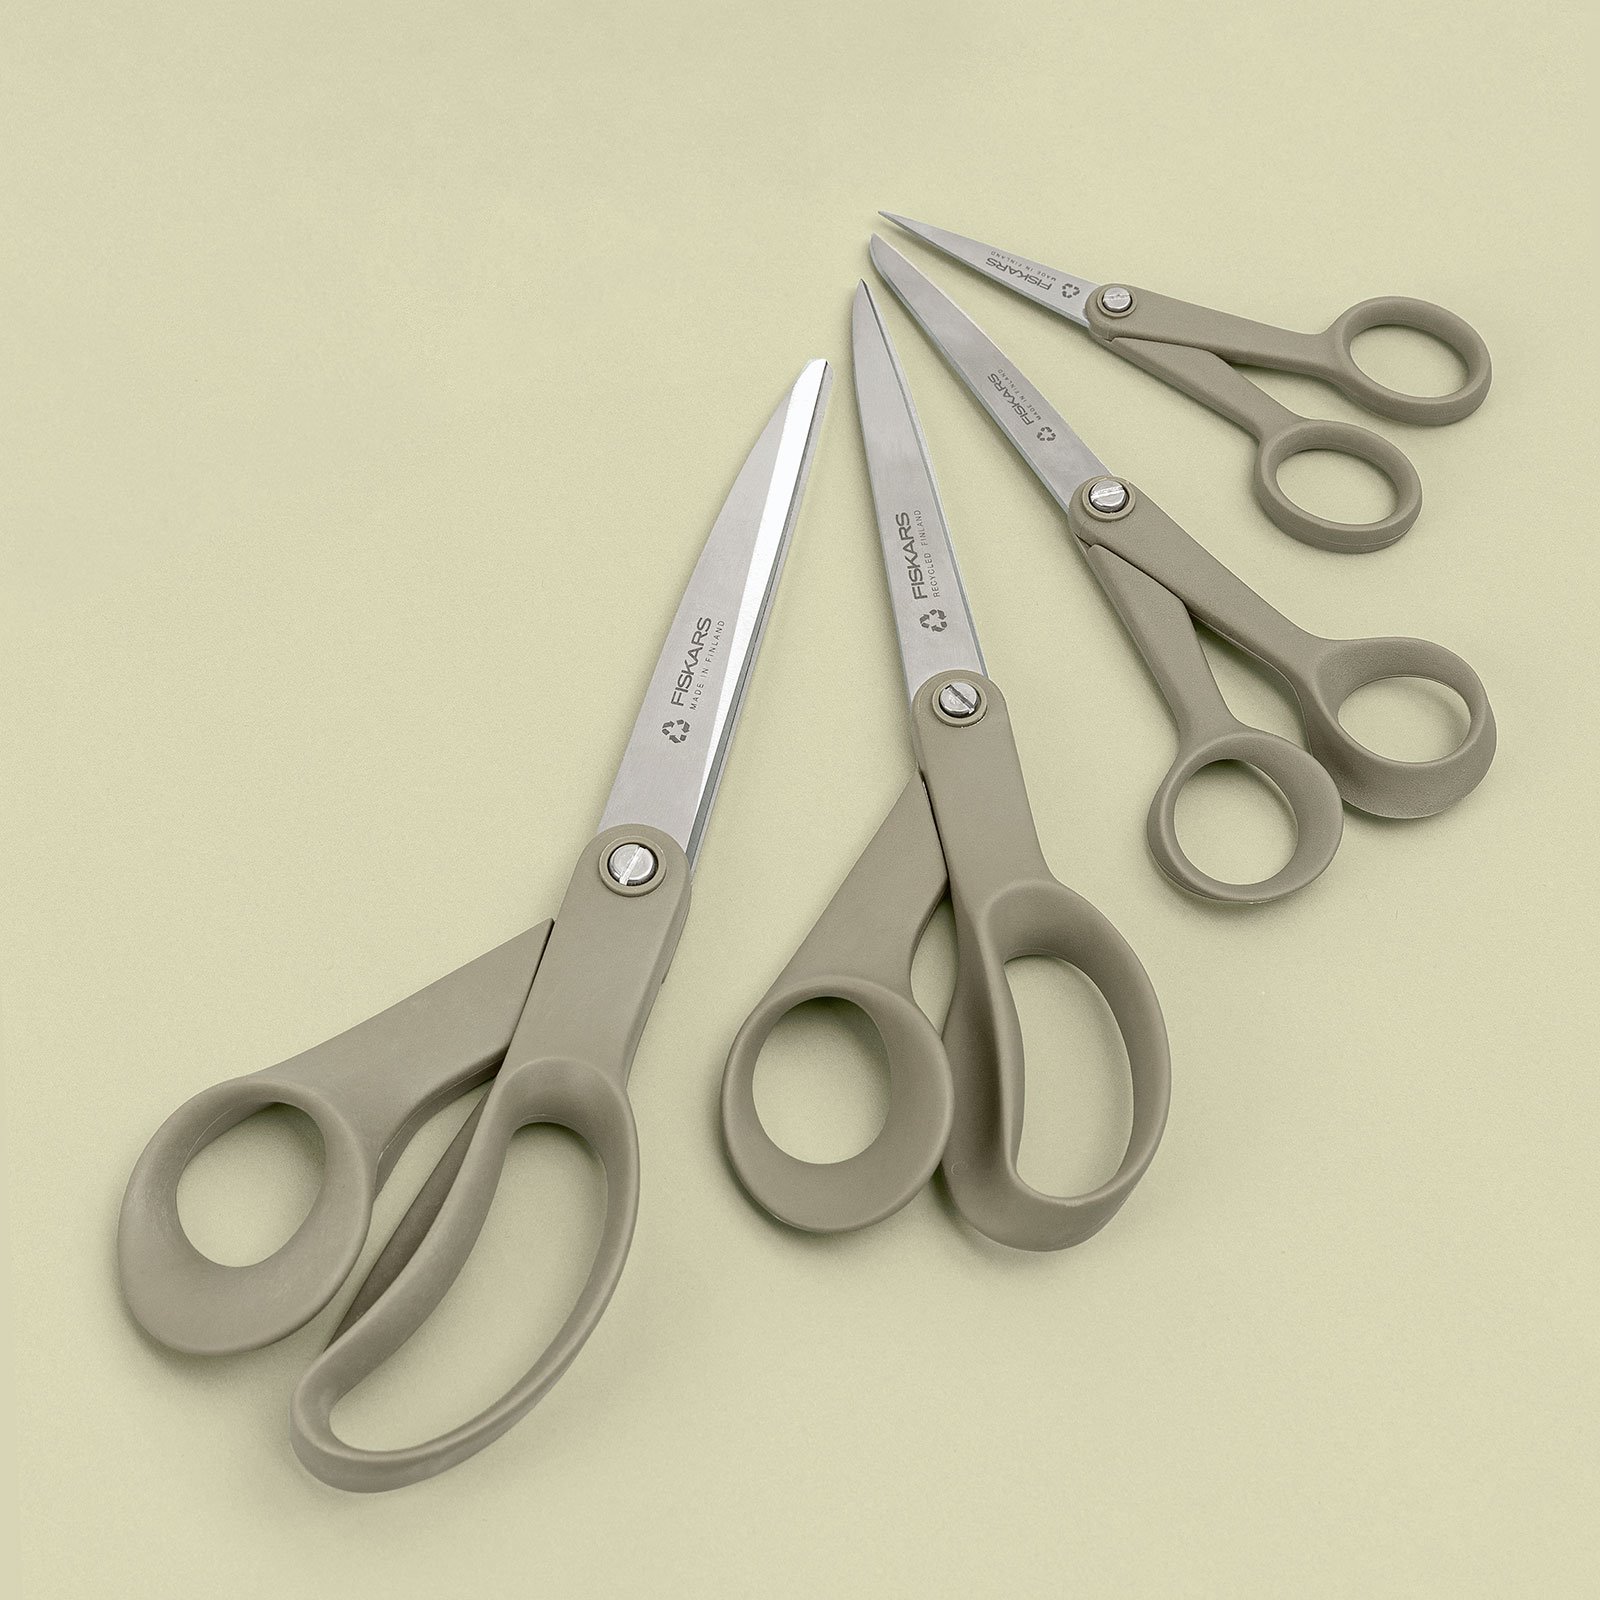 Fiskars ReNew sewing scissors 13cm 42030_42031_42032_42033_sskit